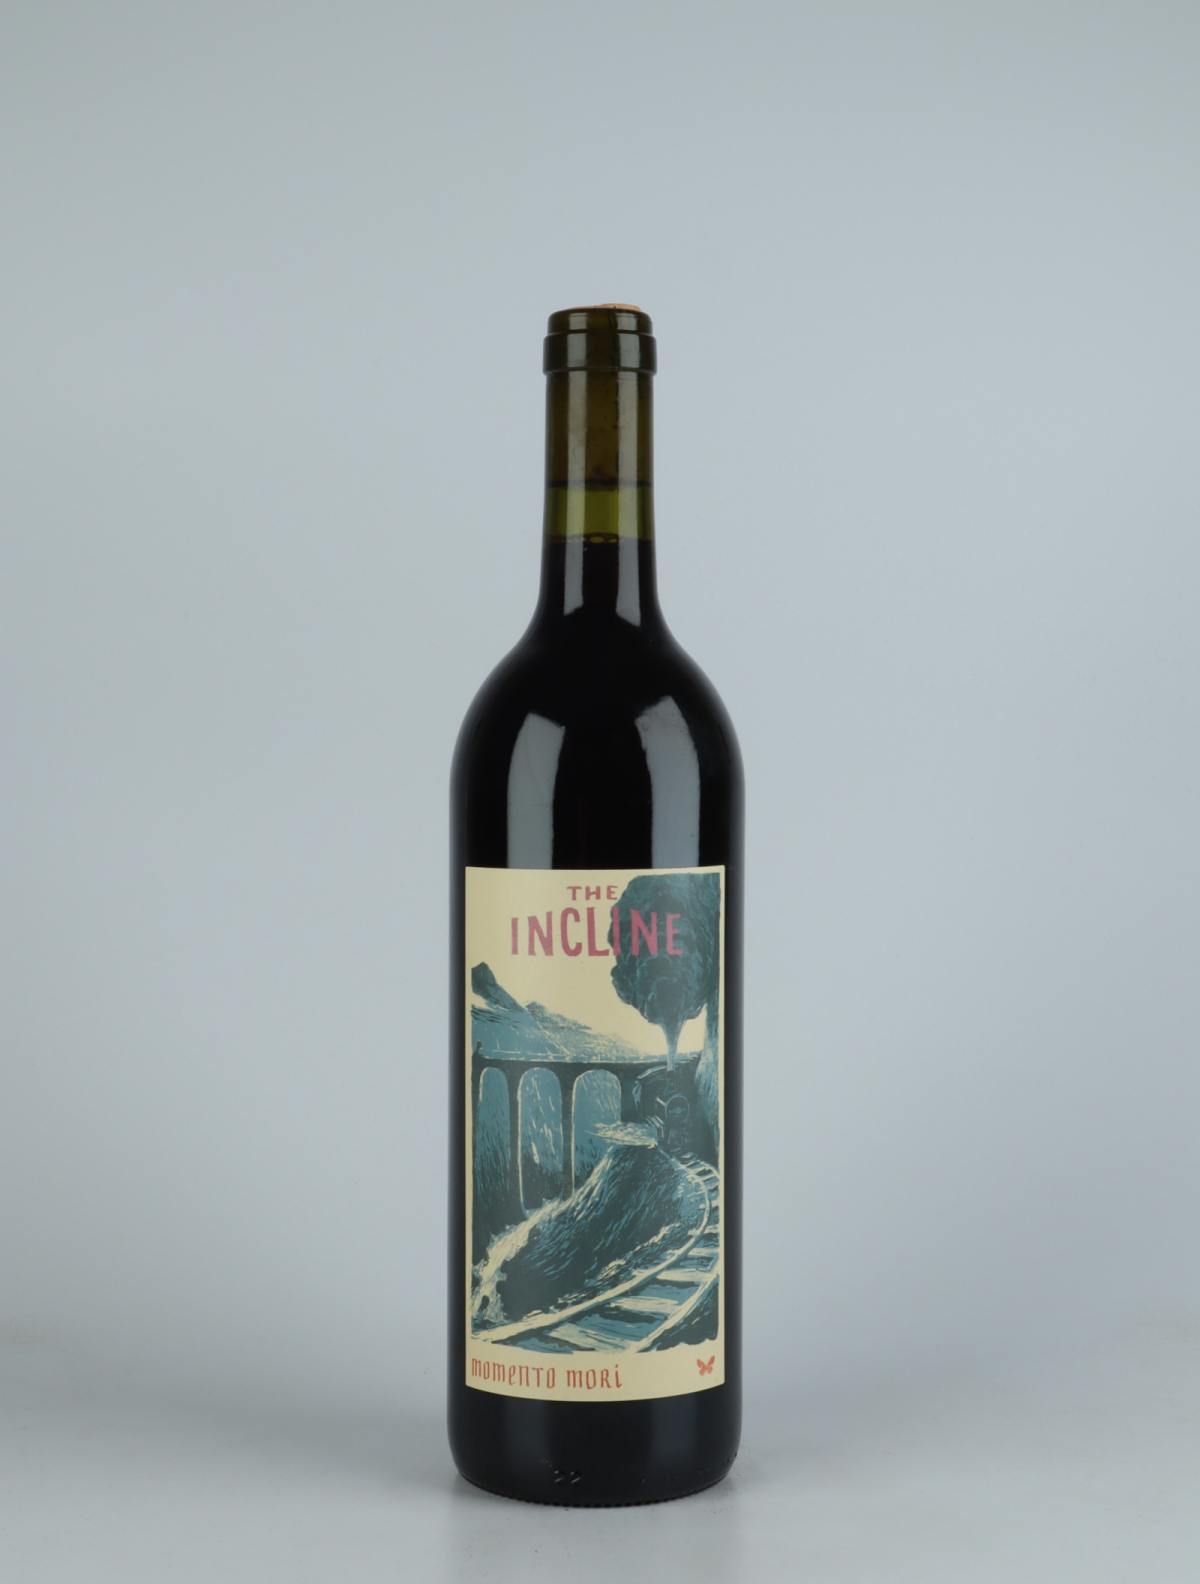 A bottle 2020 The Incline Red wine from Momento Mori, Victoria in Australia